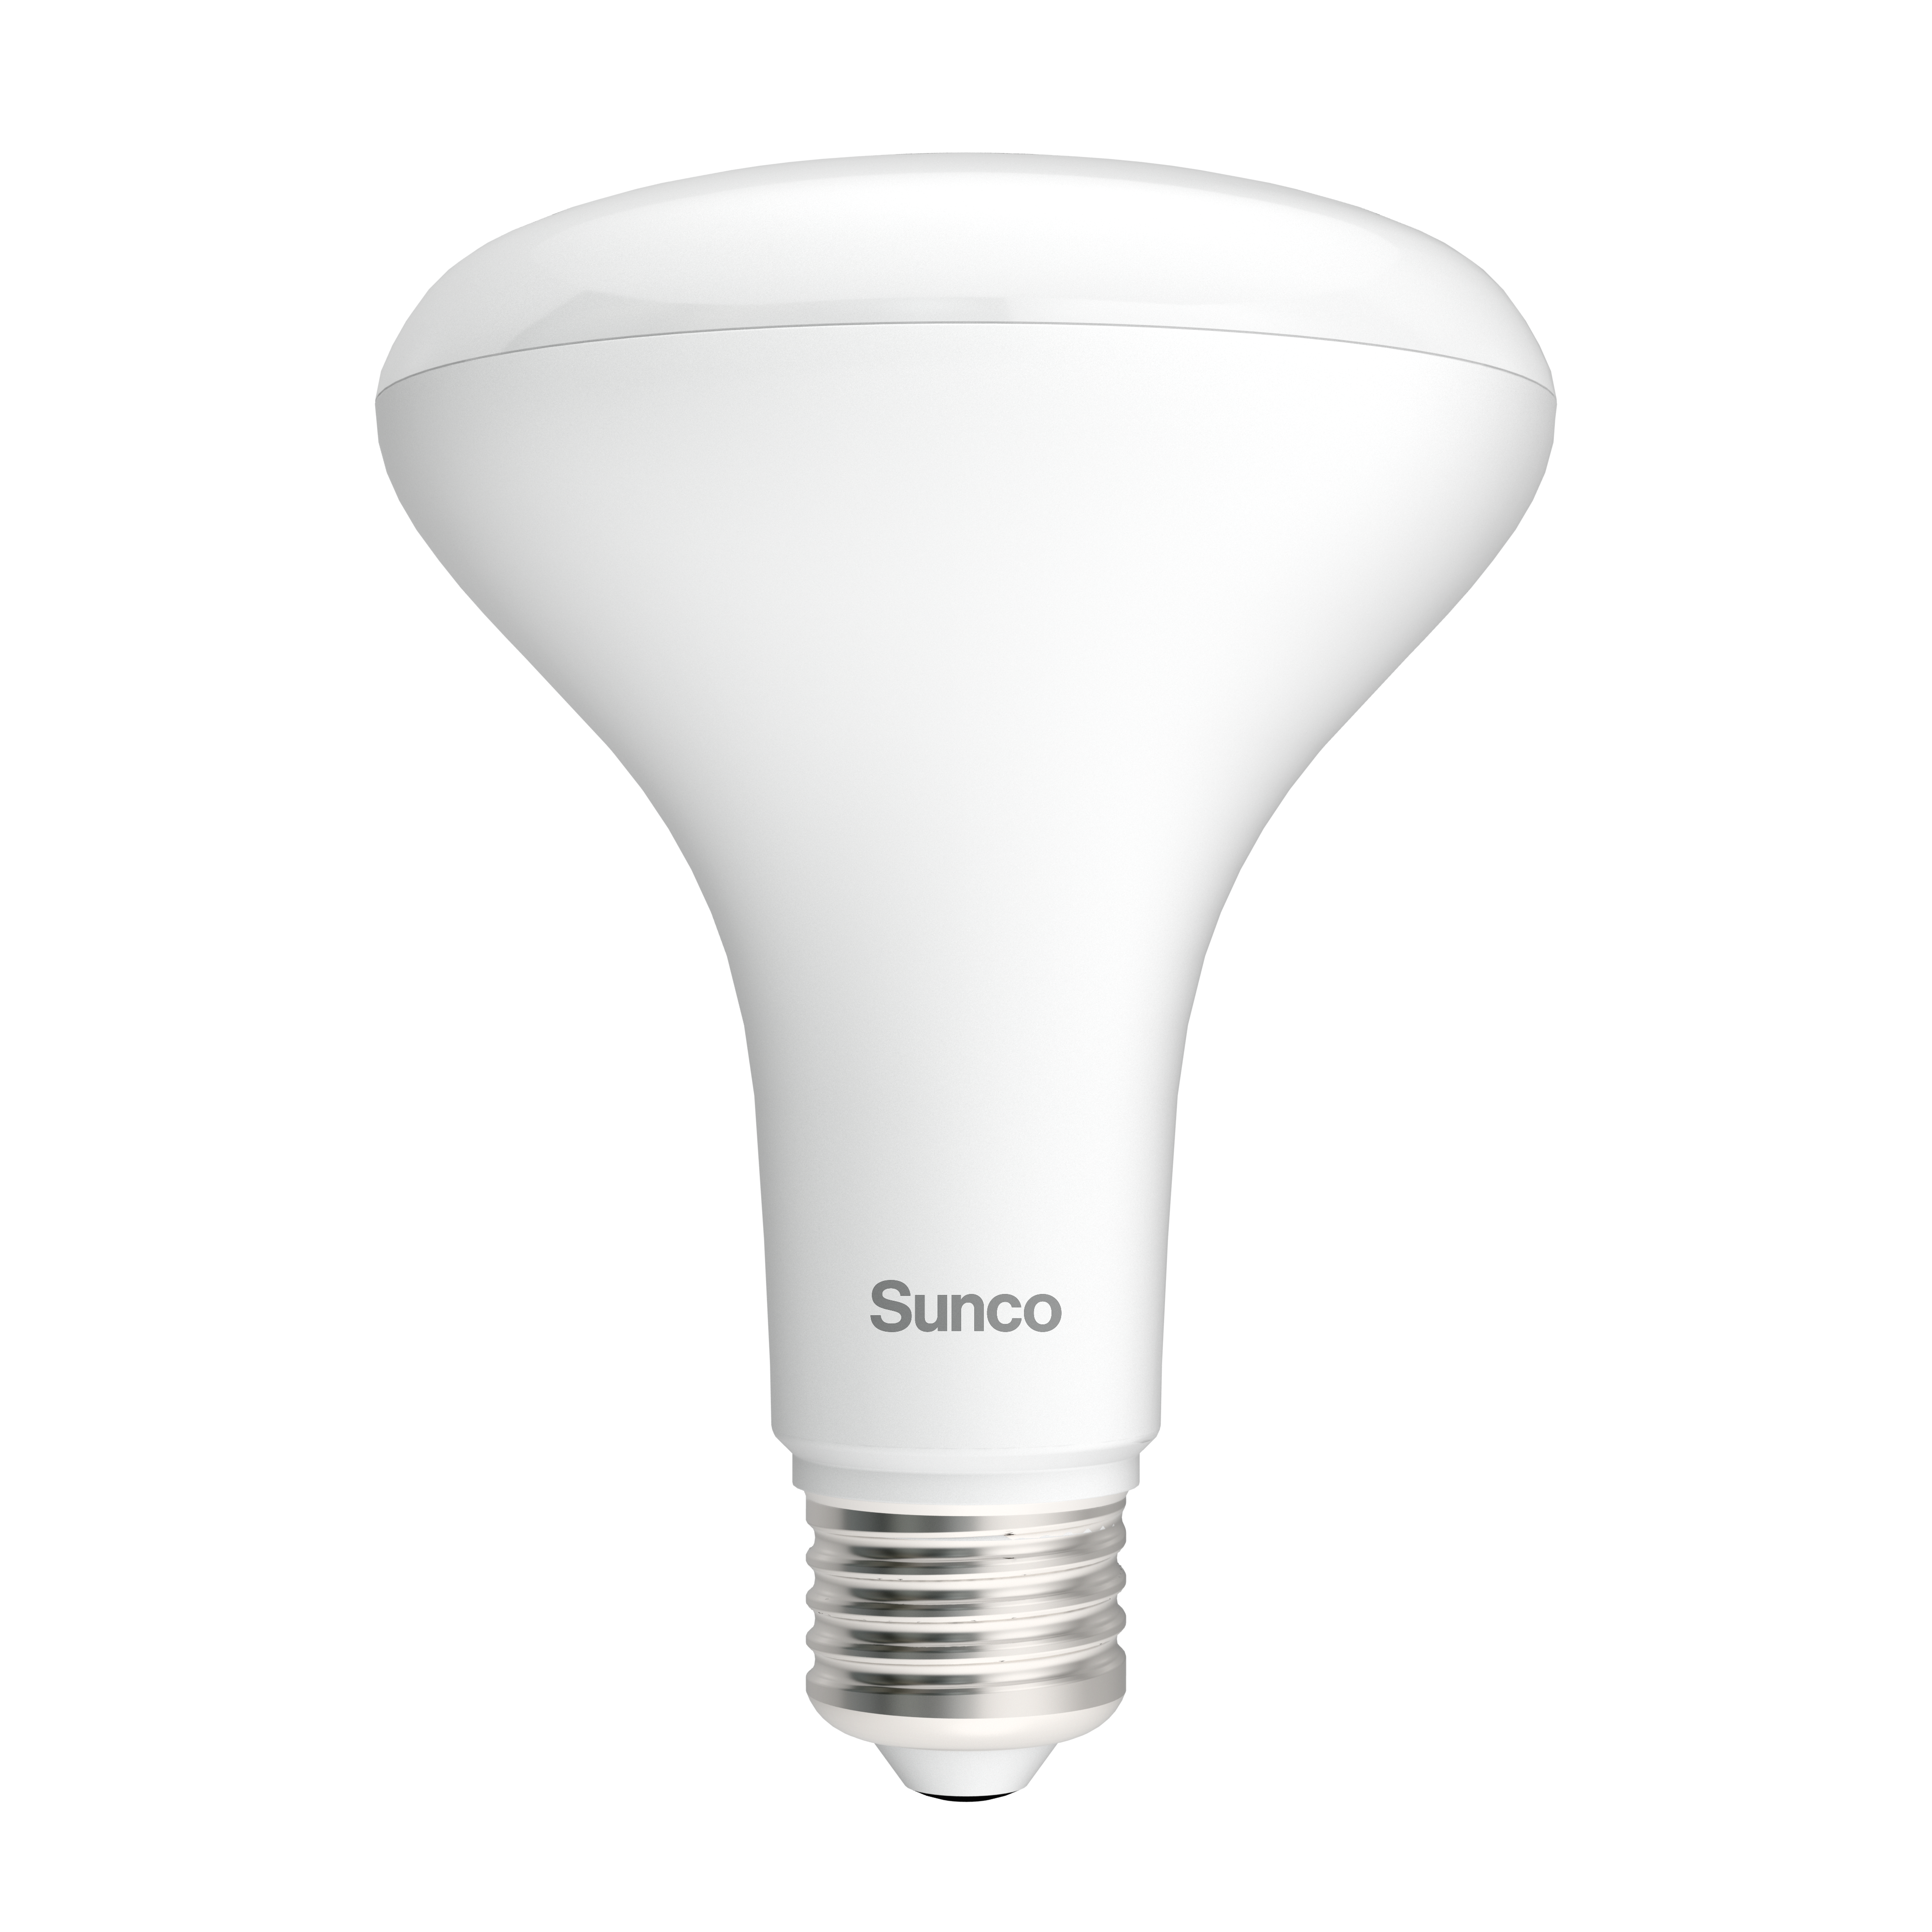 Sunco Lighting BR30 High Lumen LED light bulb with E26 Base